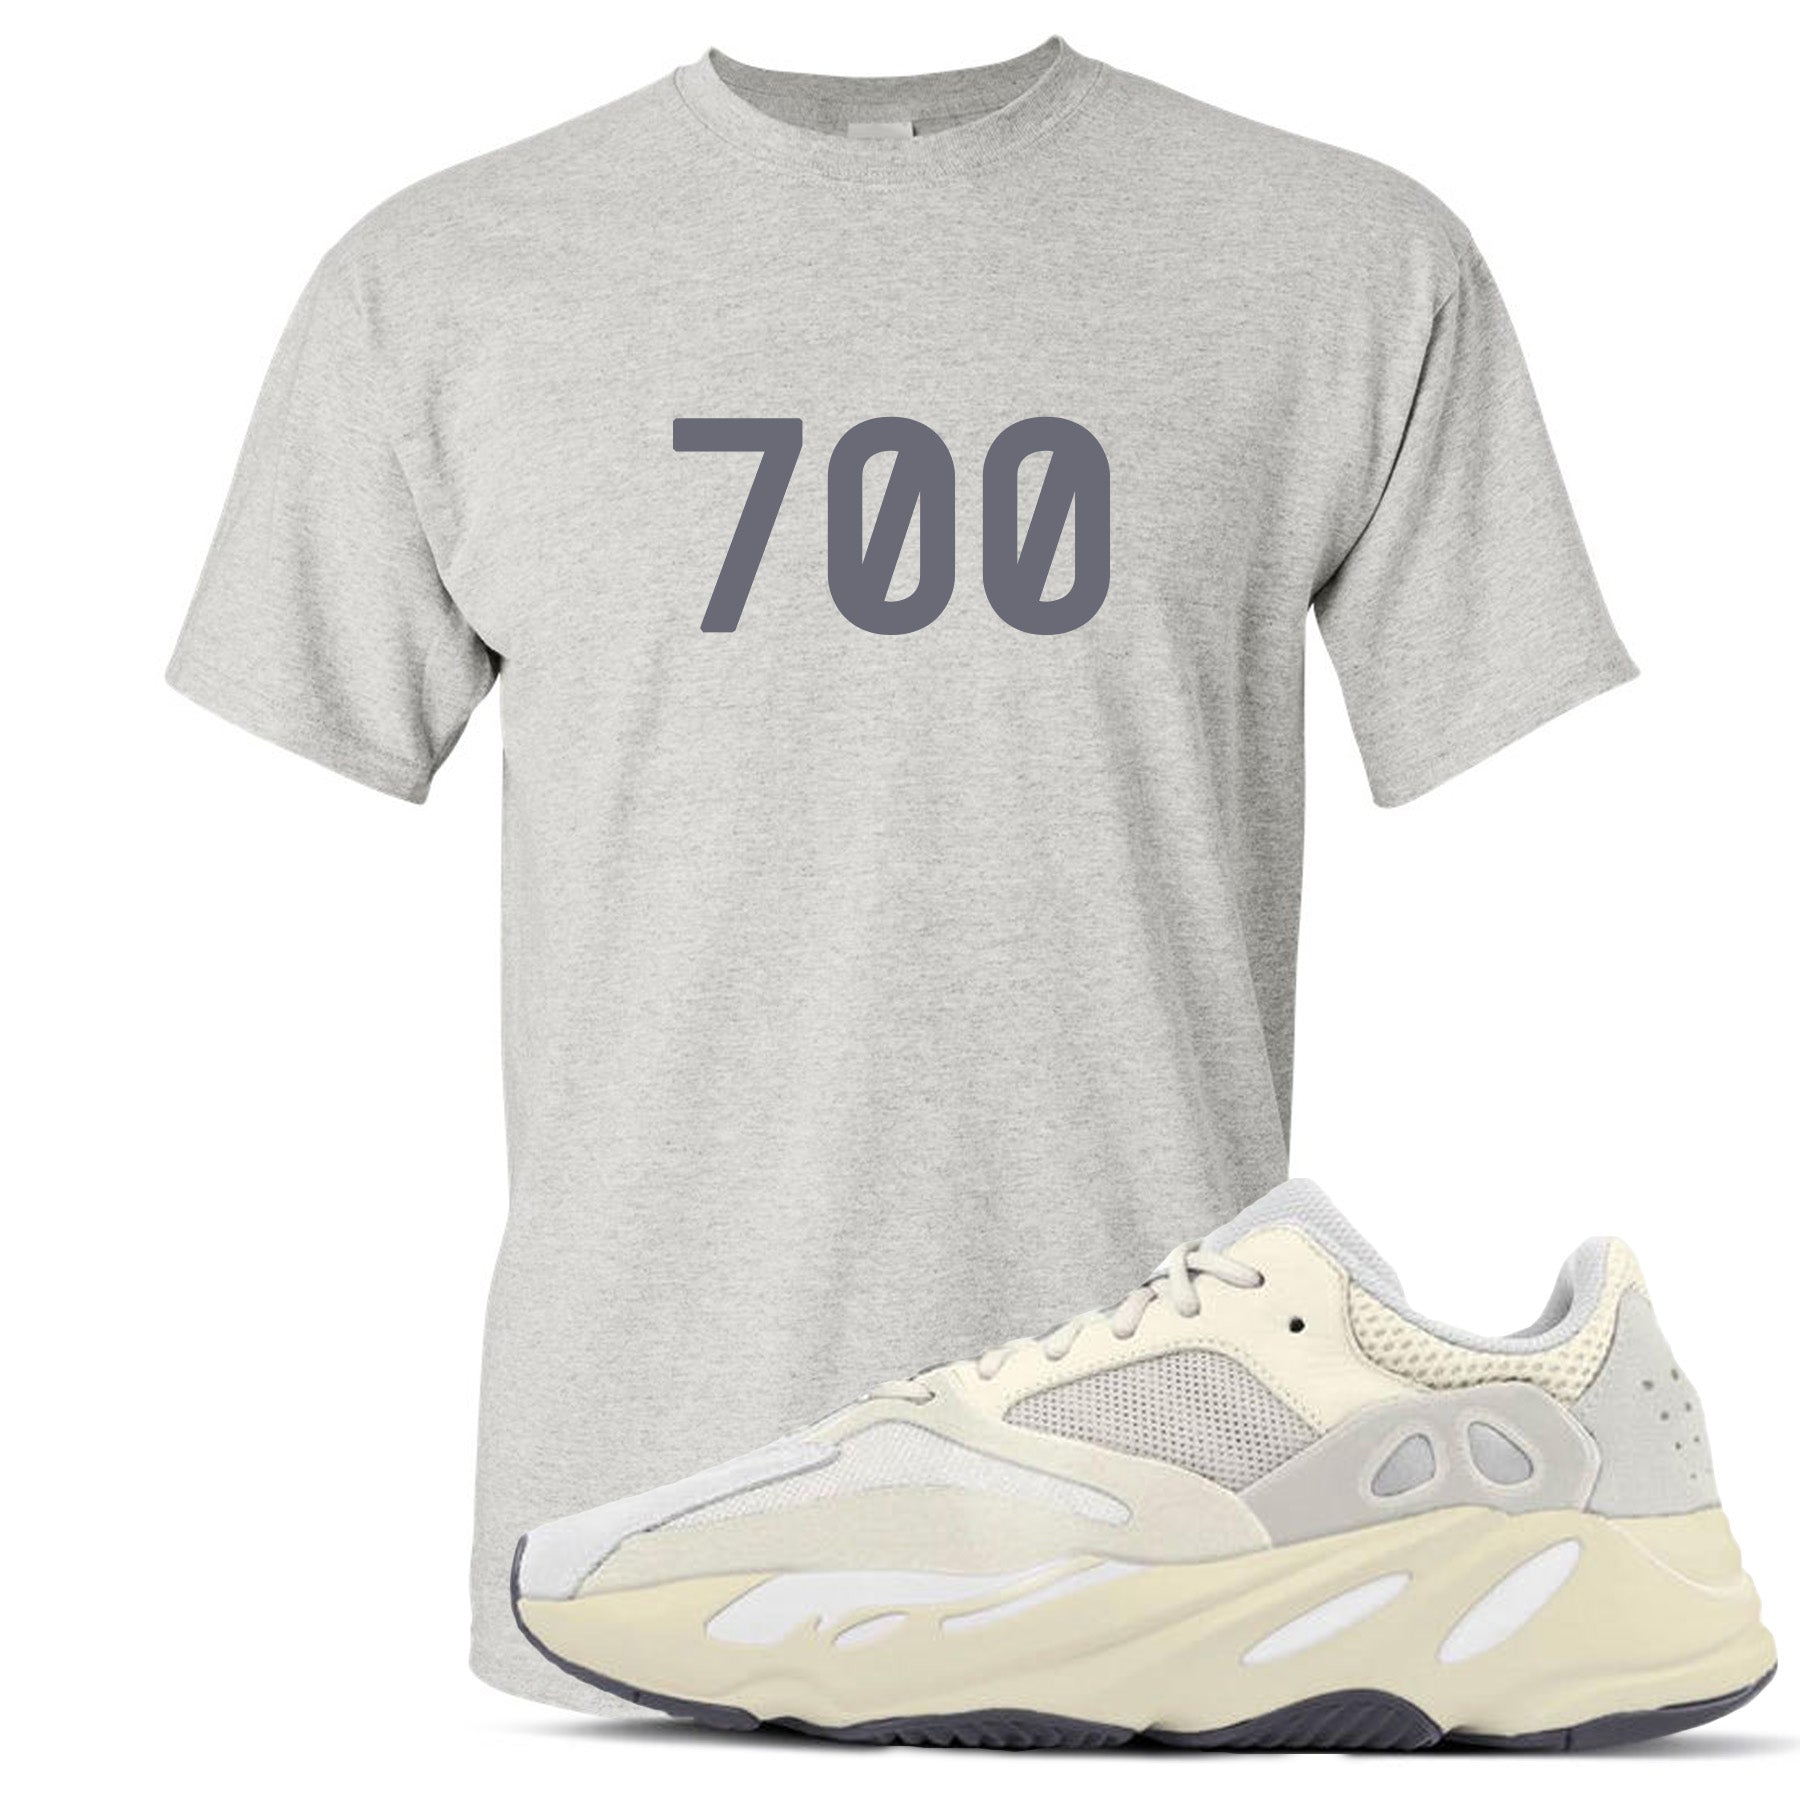 yeezy 700 analog shirt